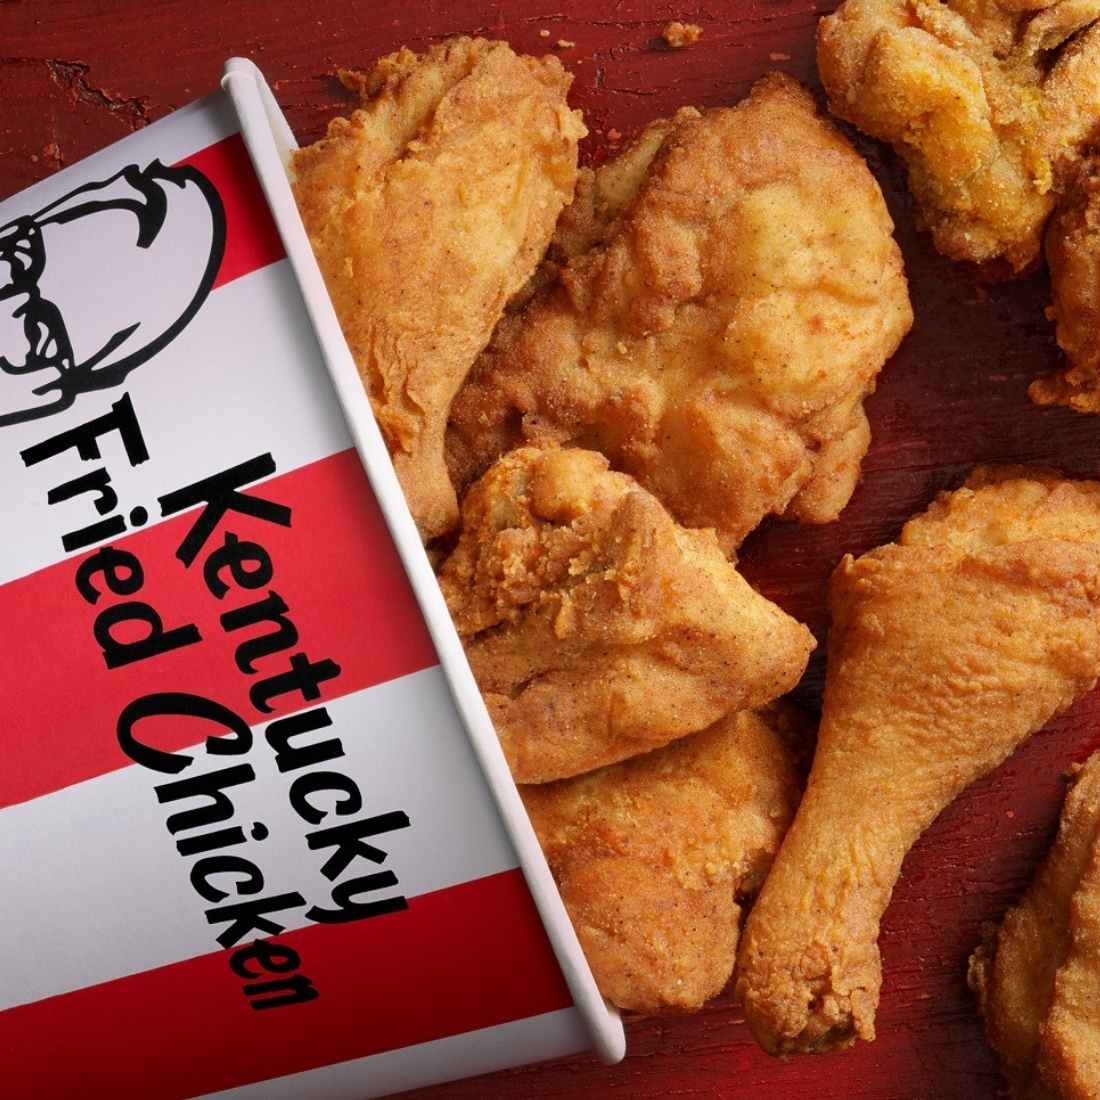 The pormotional culture of KFC